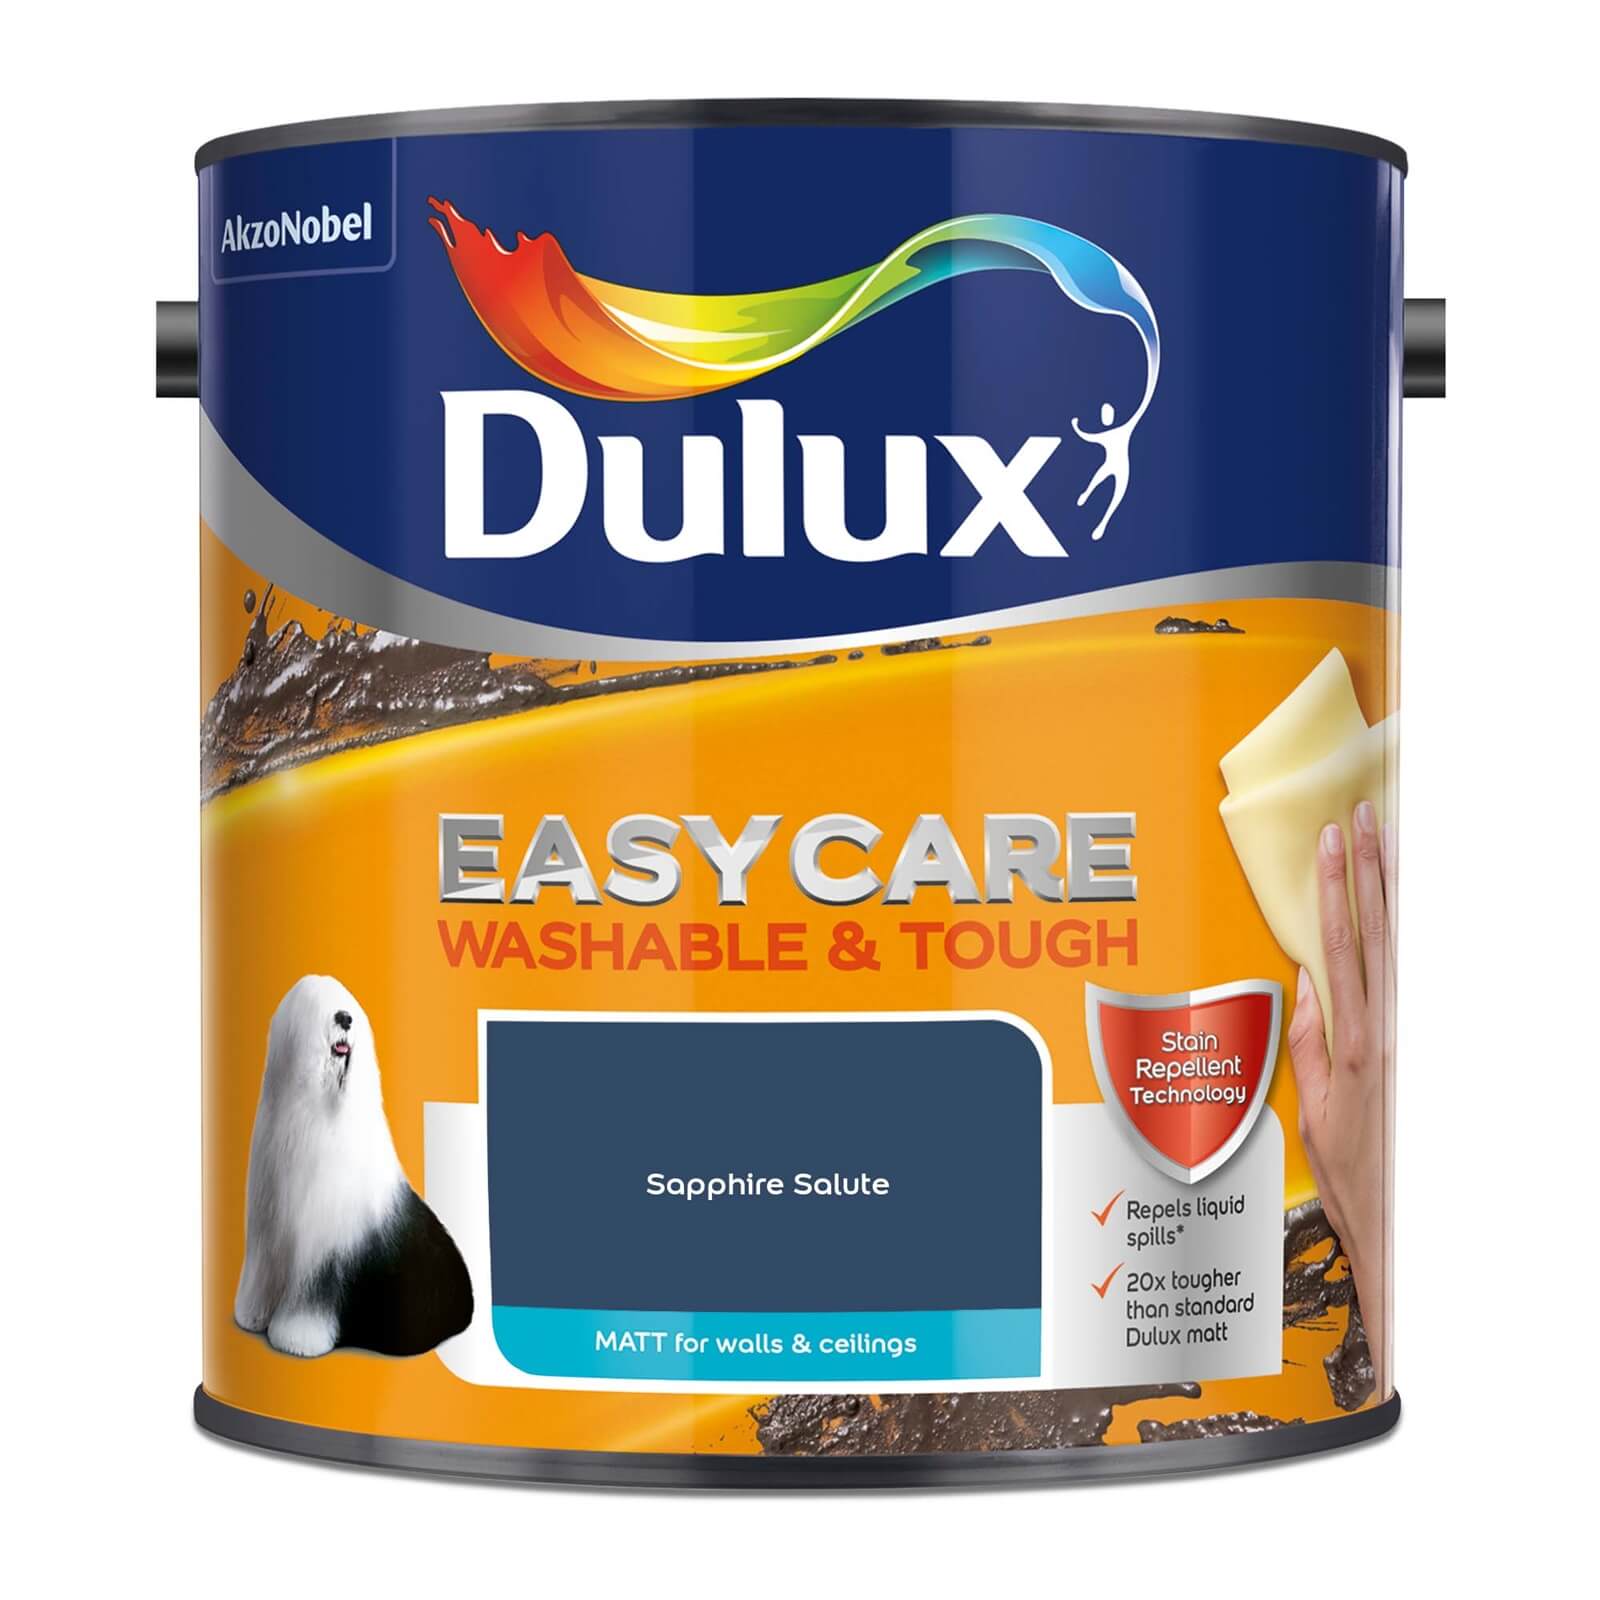 Dulux Easycare Washable & Tough Matt Paint Sapphire Salute - 2.5L